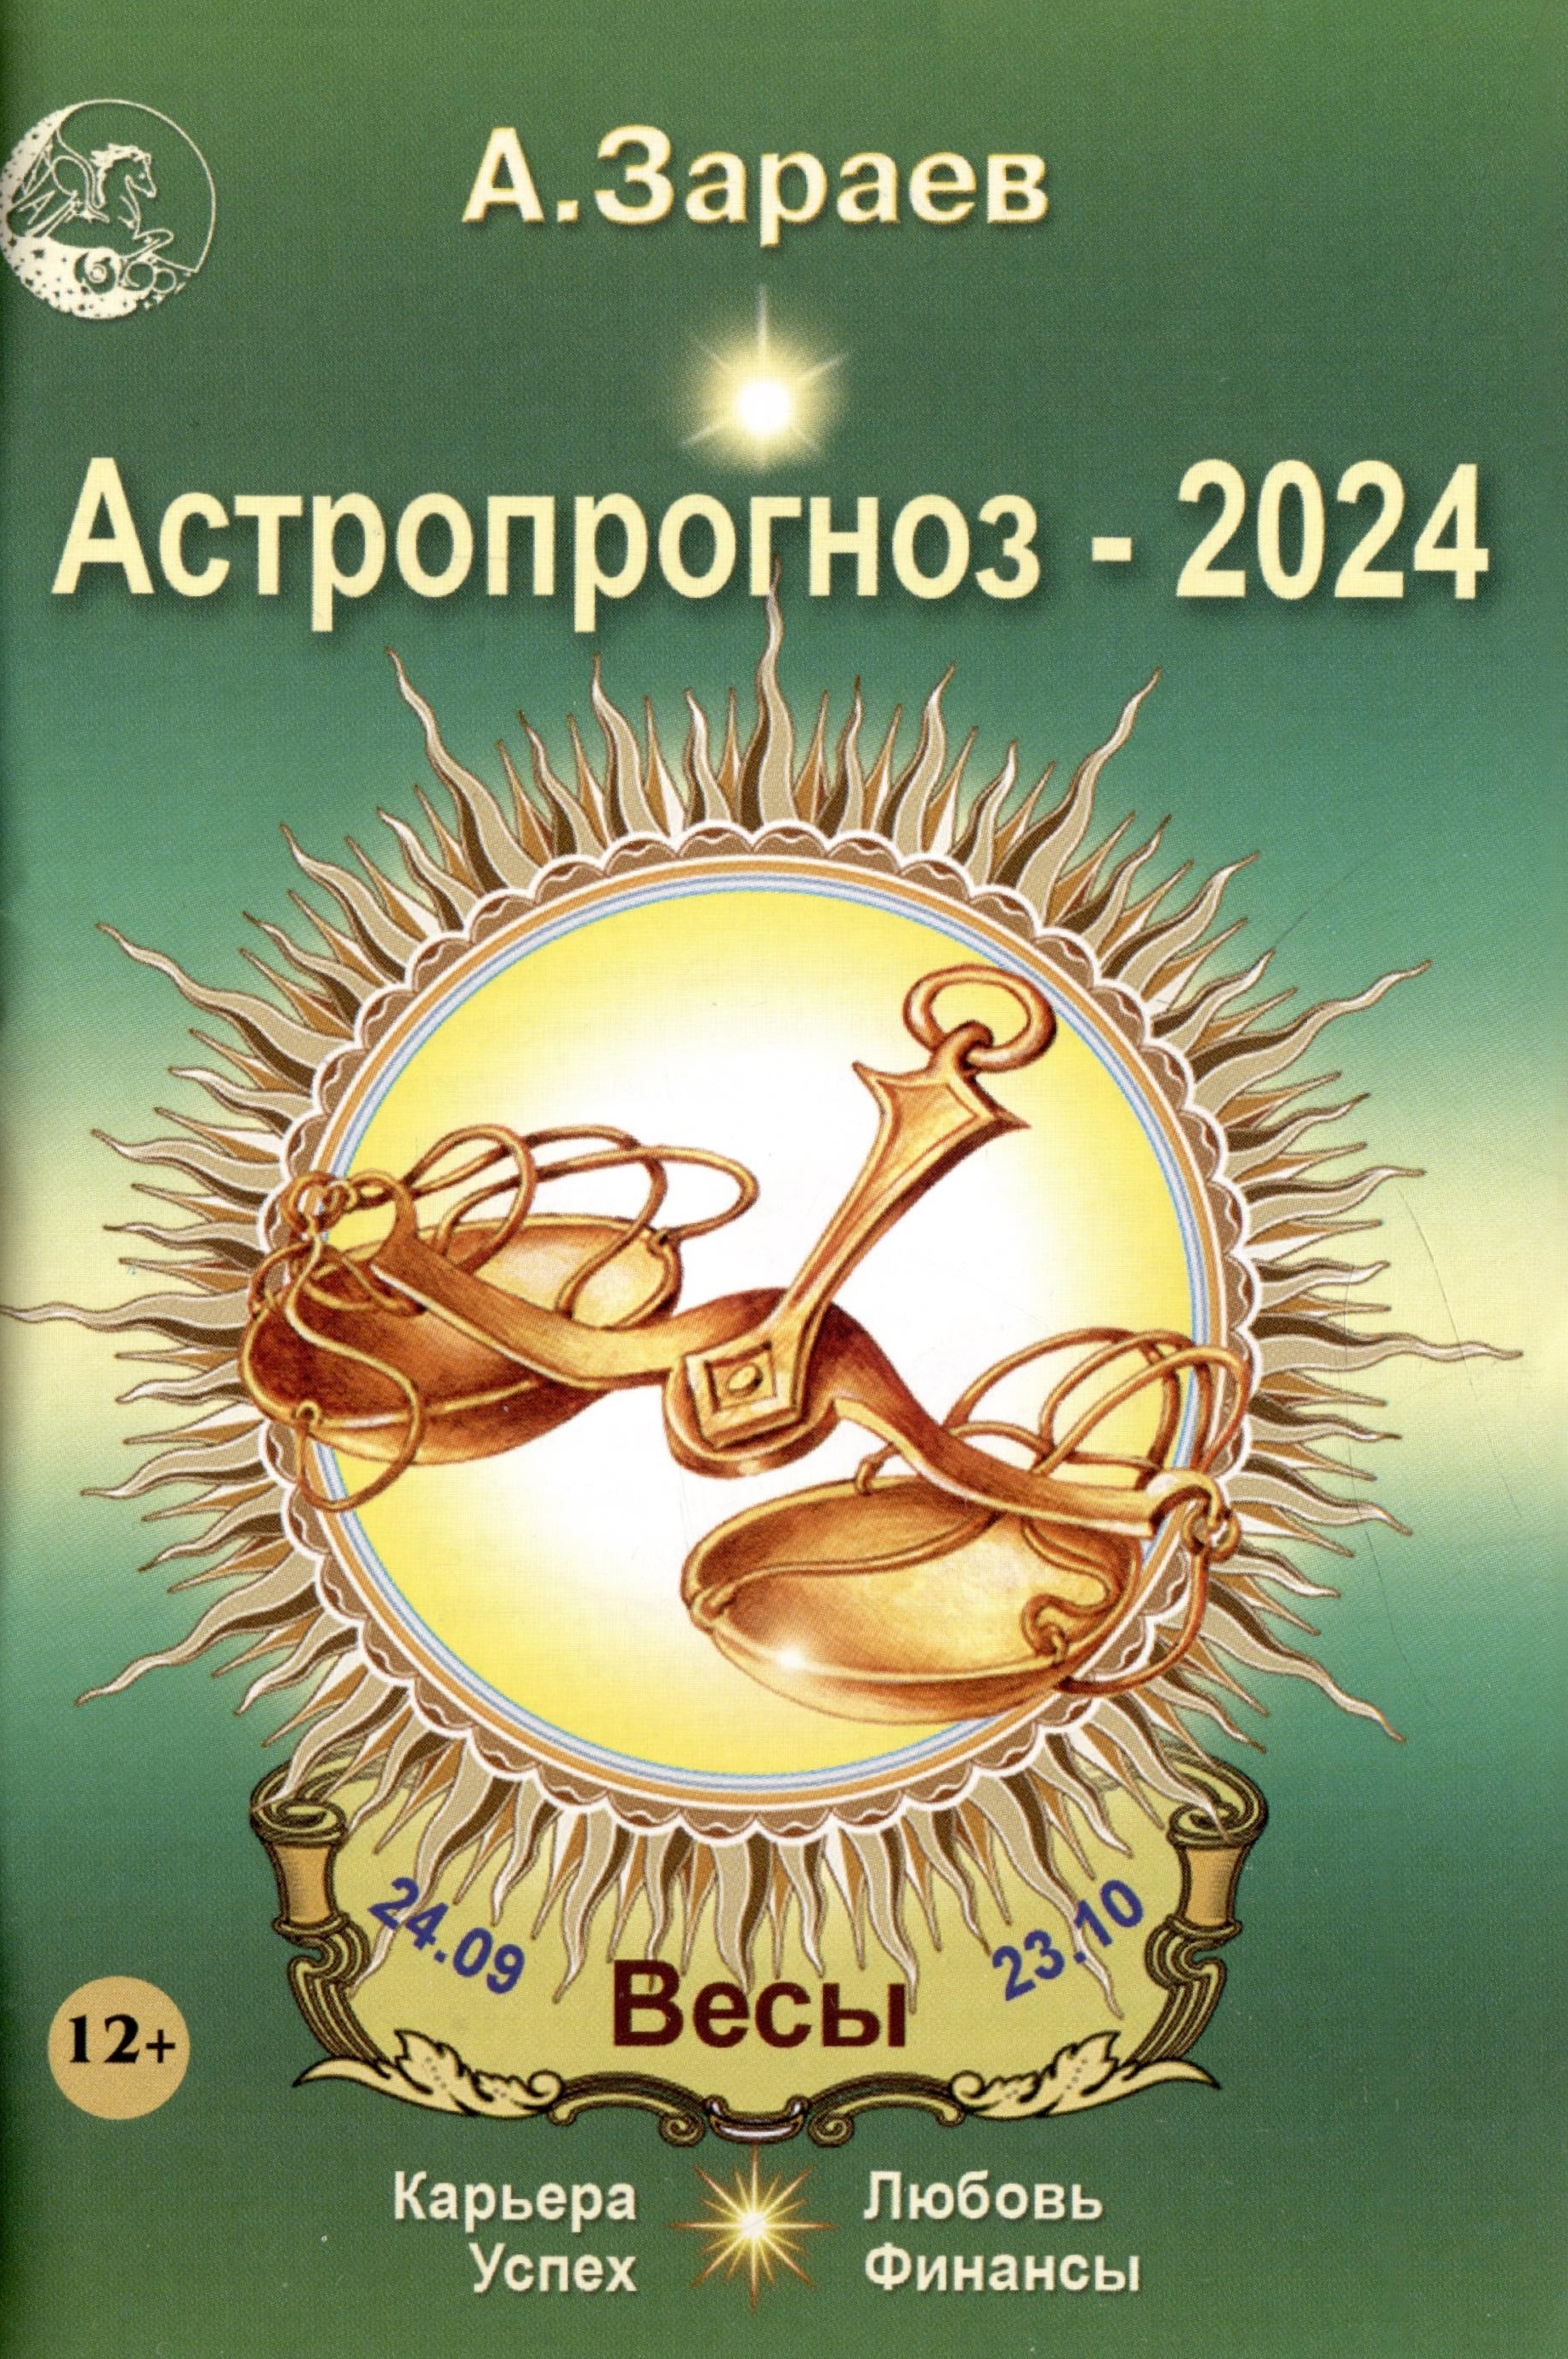 Астрологический прогноз на апрель 2024 года